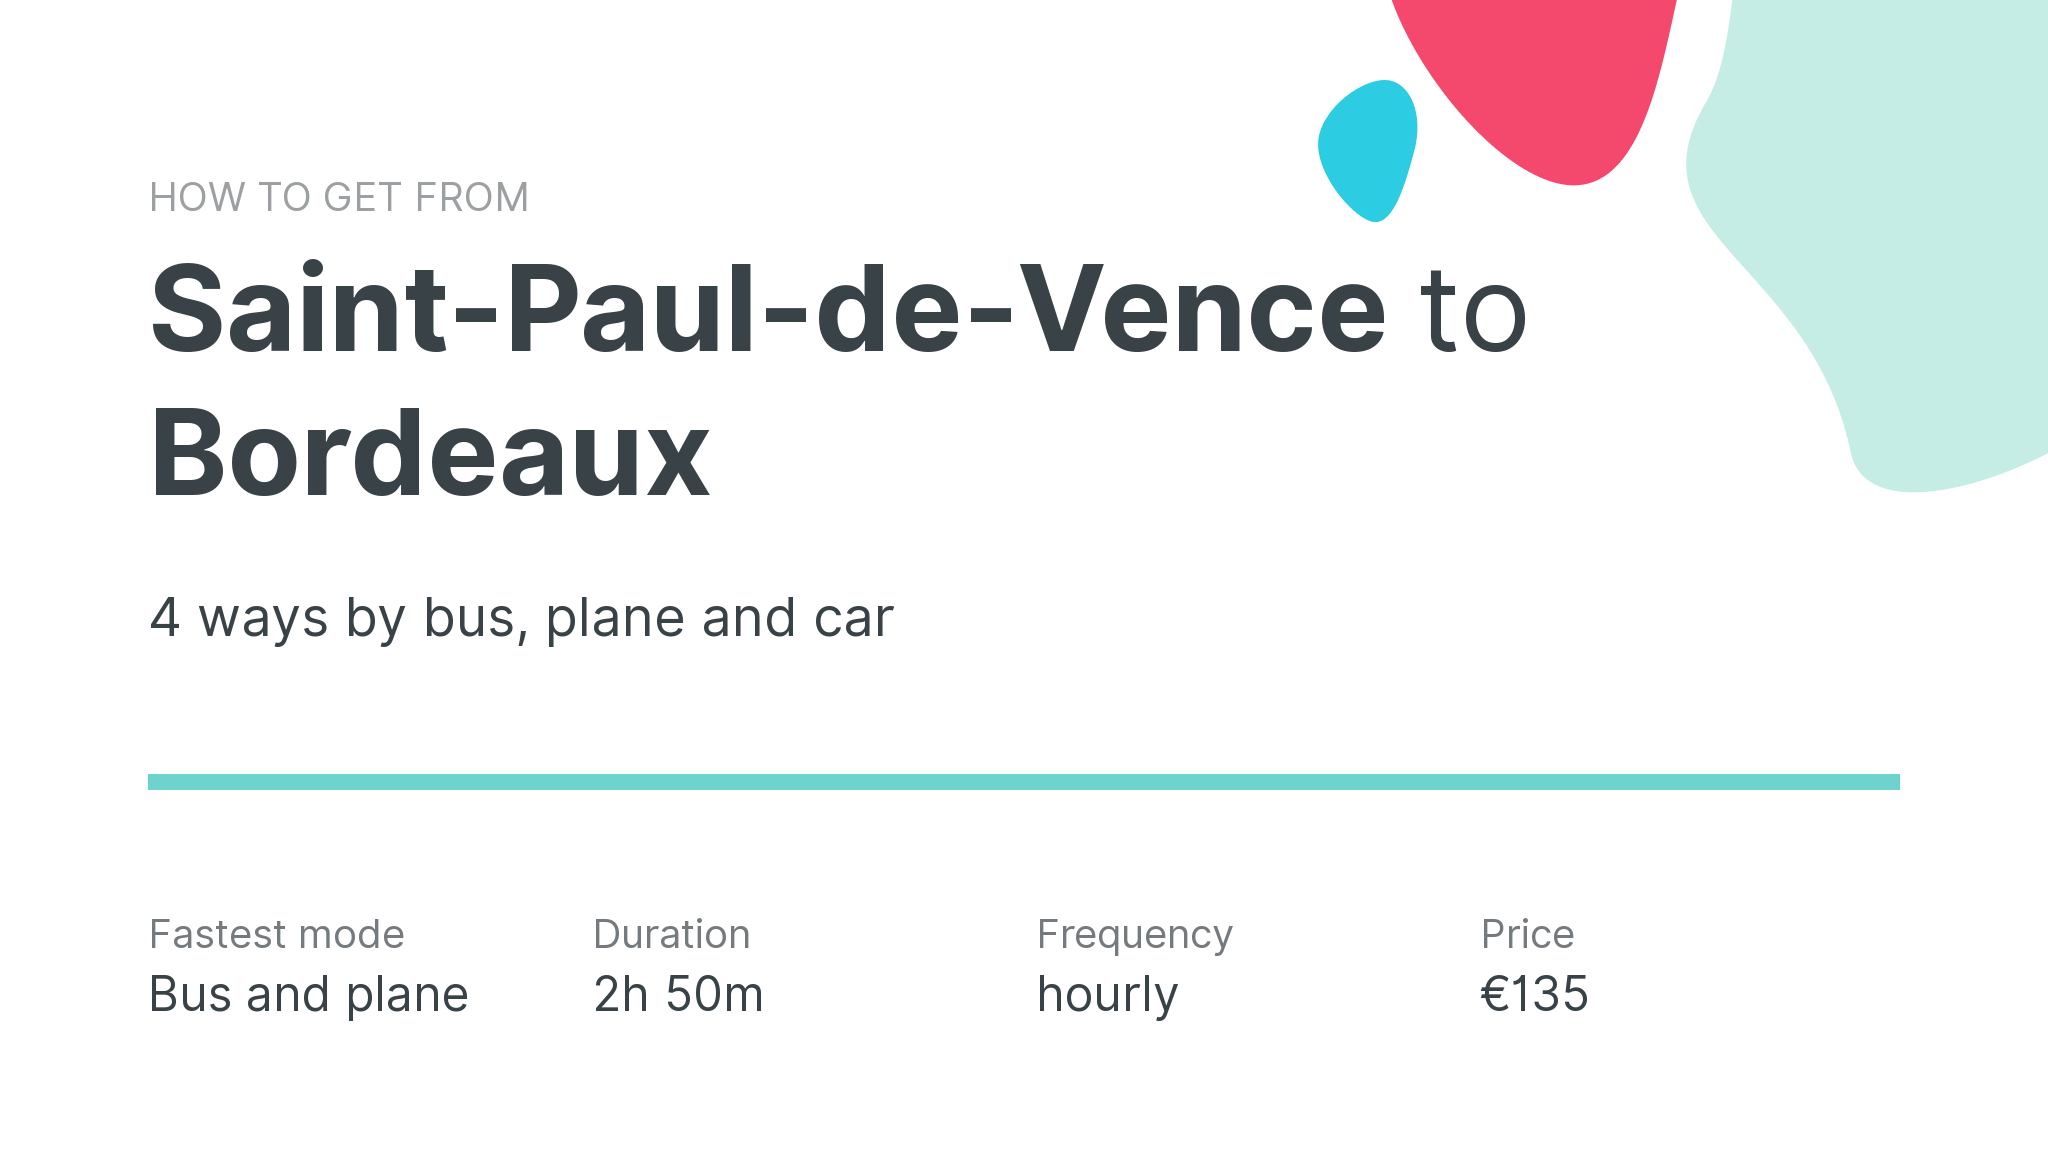 How do I get from Saint-Paul-de-Vence to Bordeaux